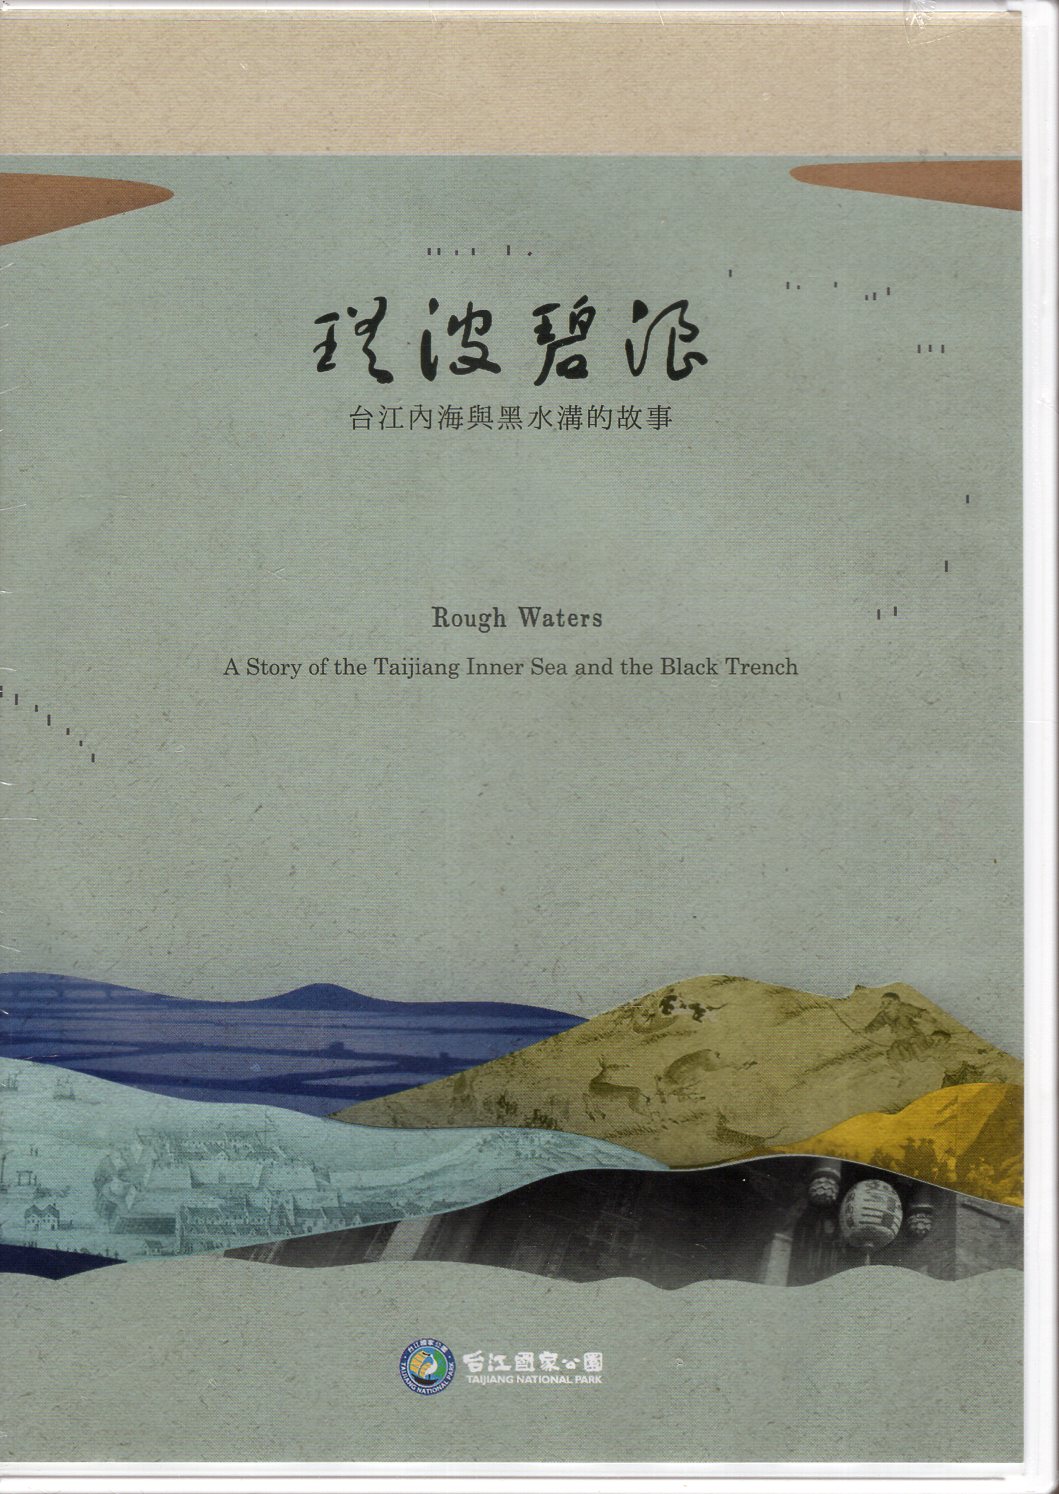 《瑤波碧浪-台江內海與黑水溝的故事(DVD)》封面